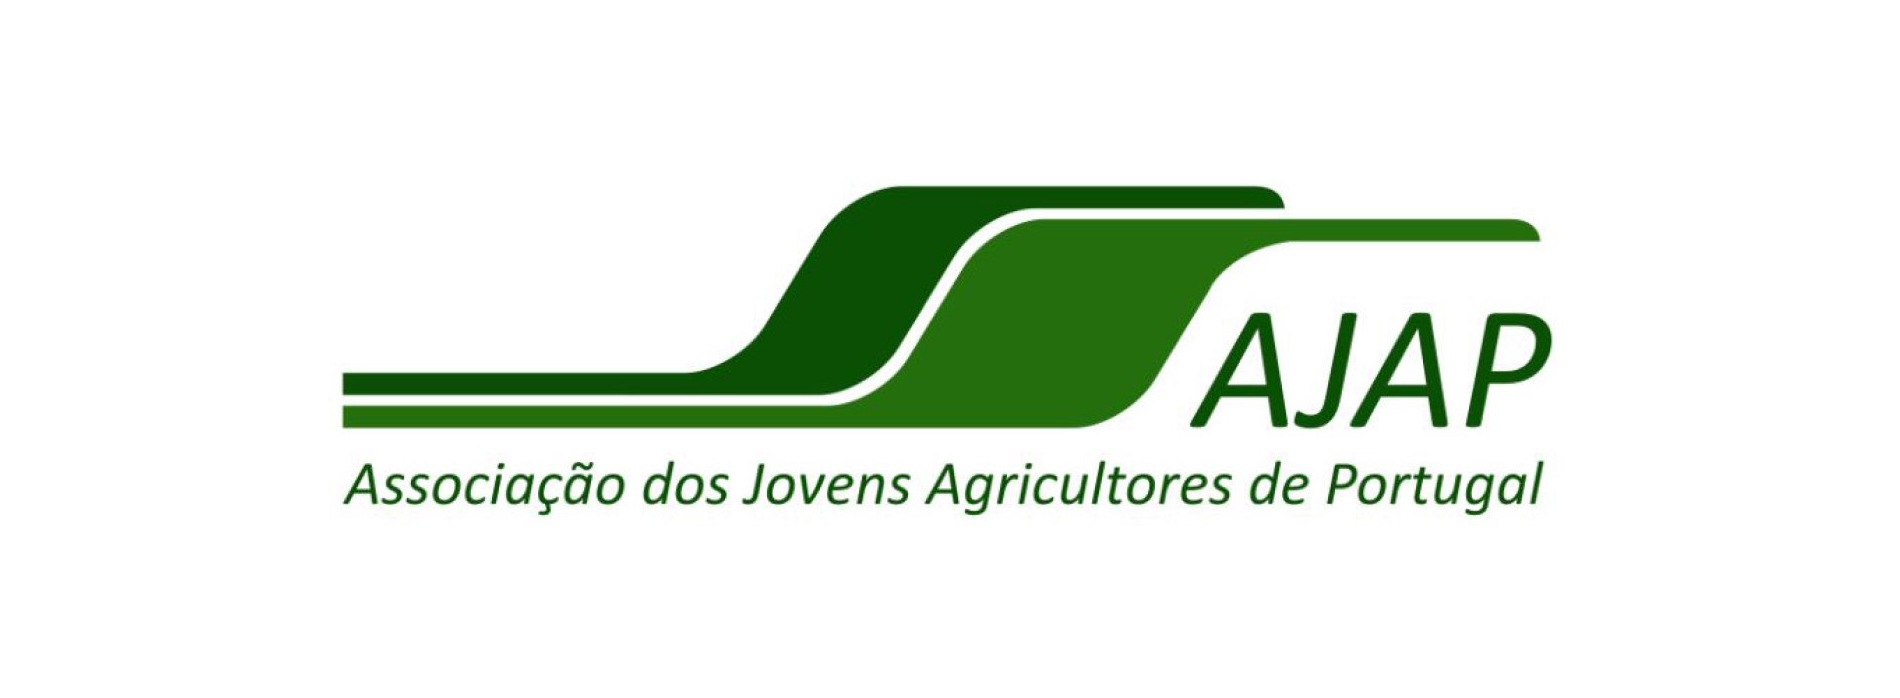 AJAP – Associação dos Jovens Agricultores de Portugal